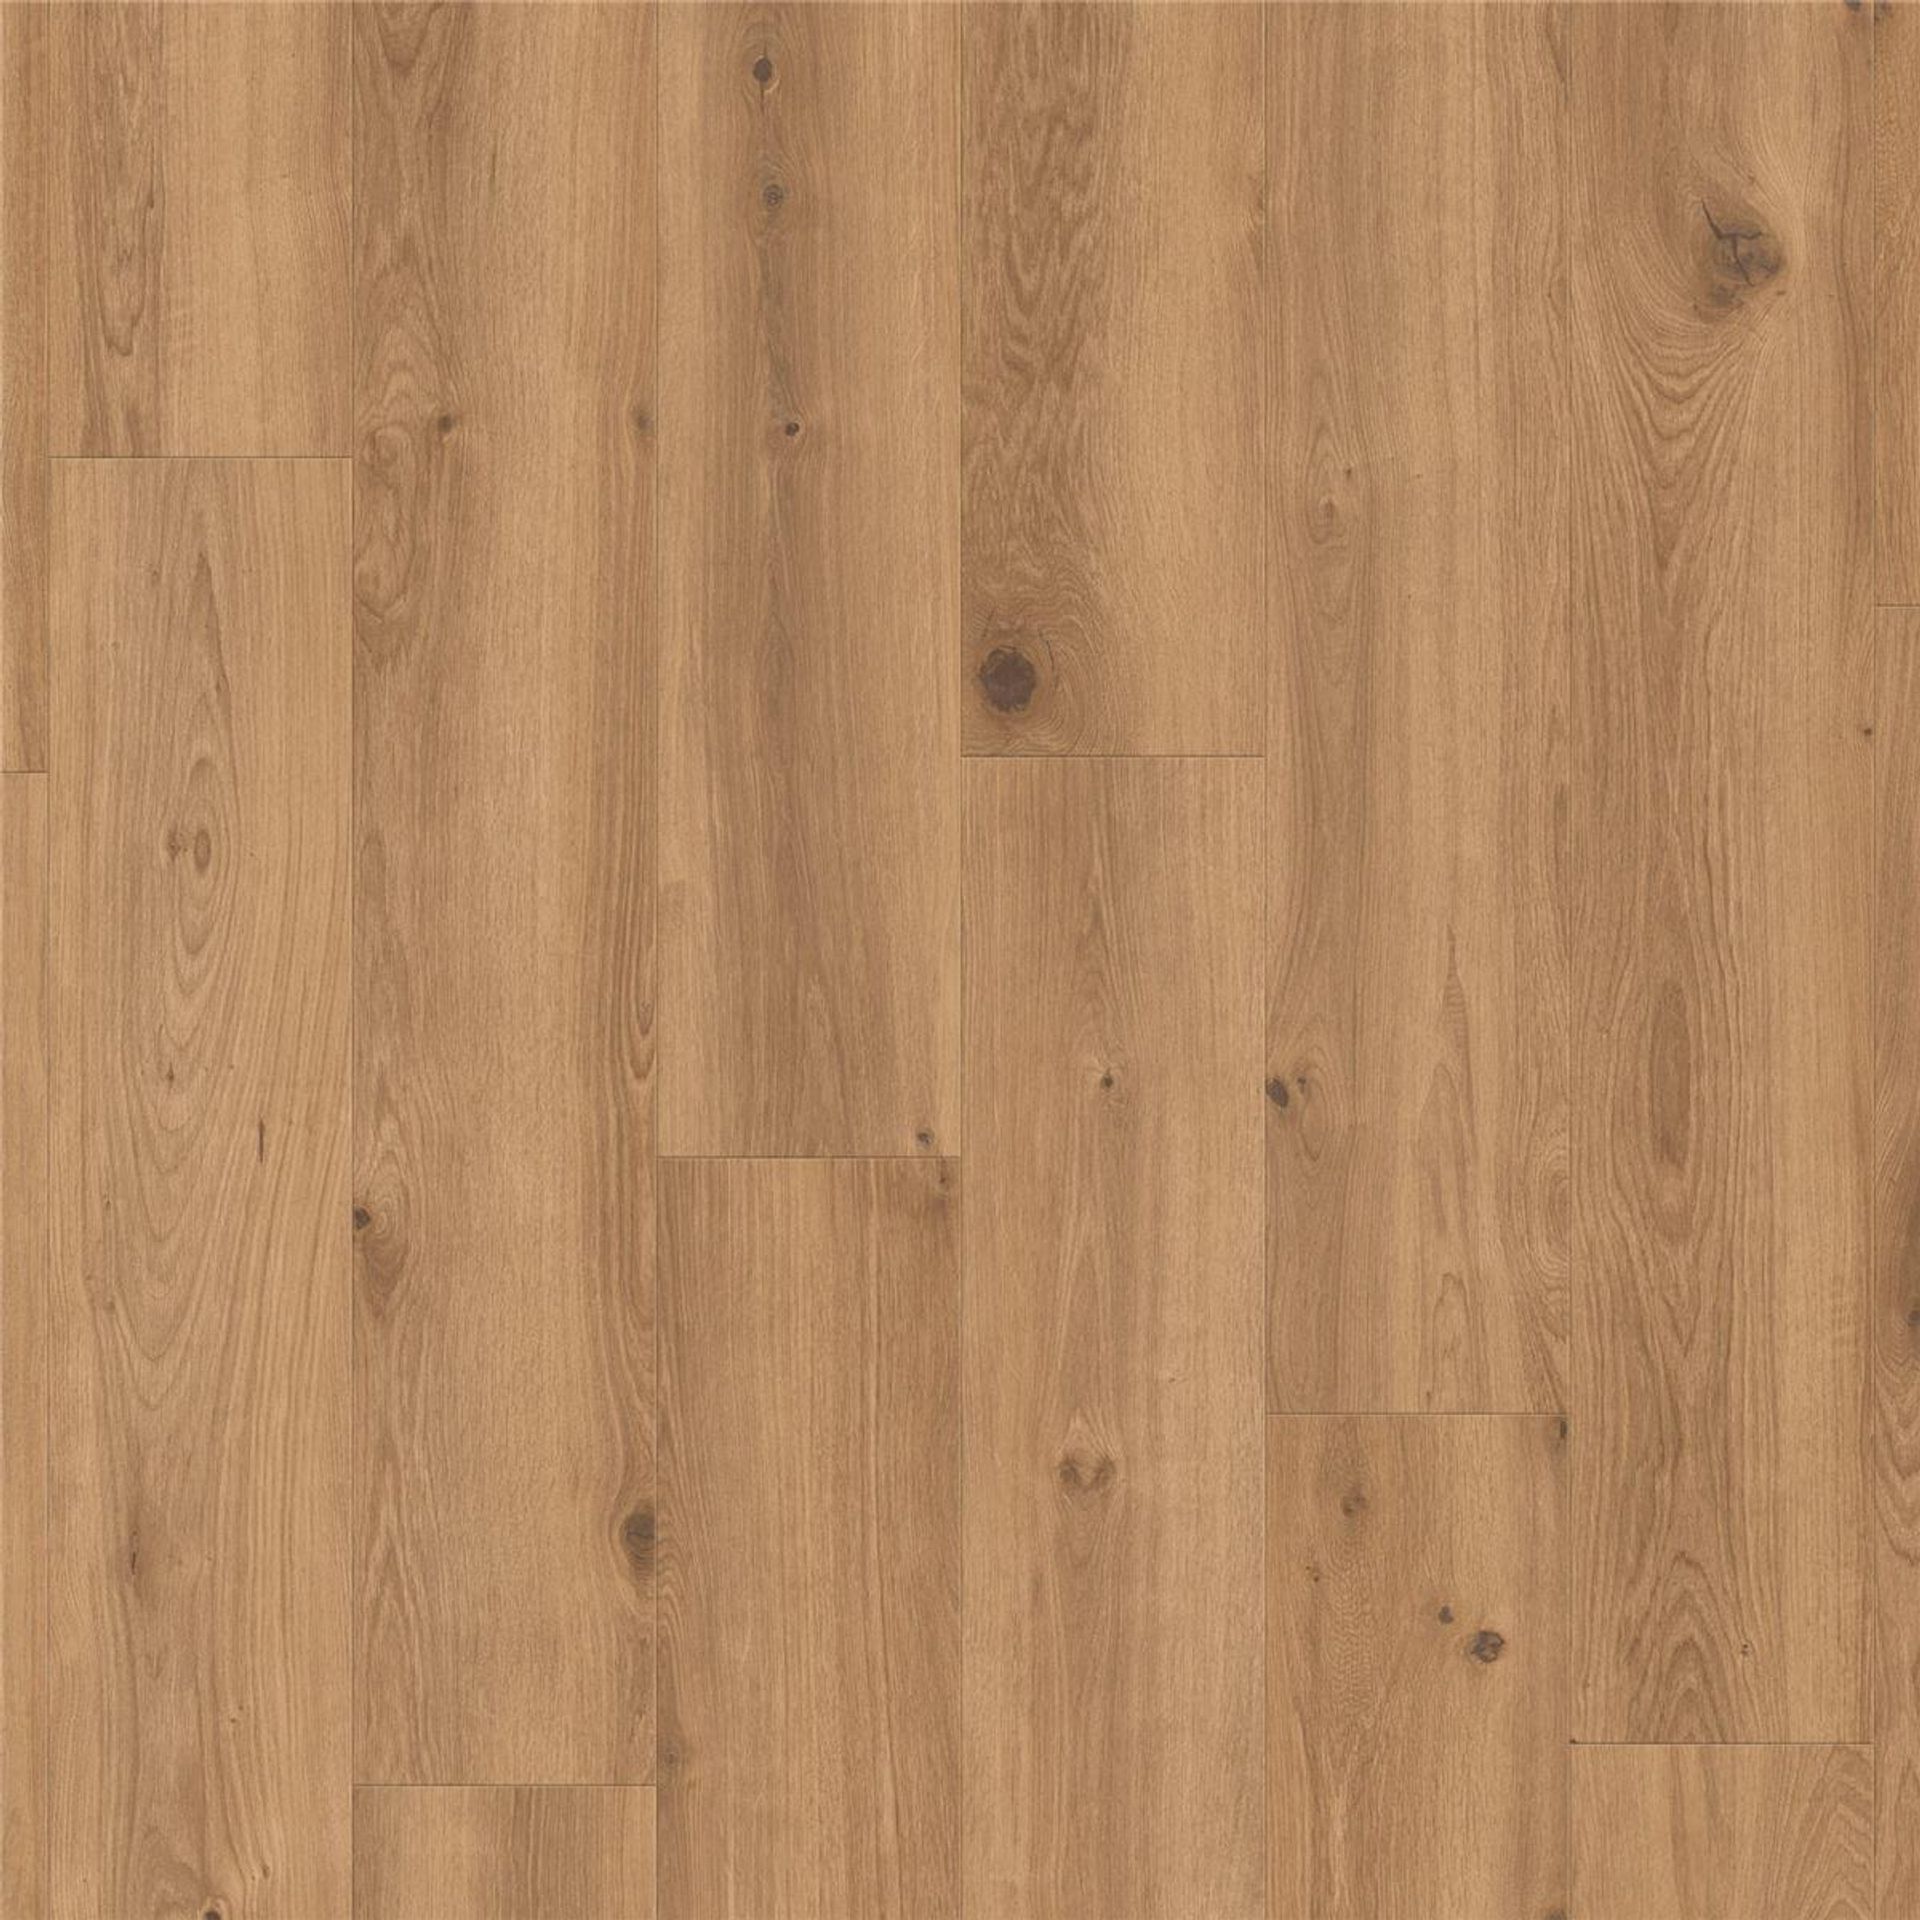 Designboden NATURALS-Creek Oak-Brown Planke 120 cm x 20 cm - Nutzschichtdicke 0,70 mm